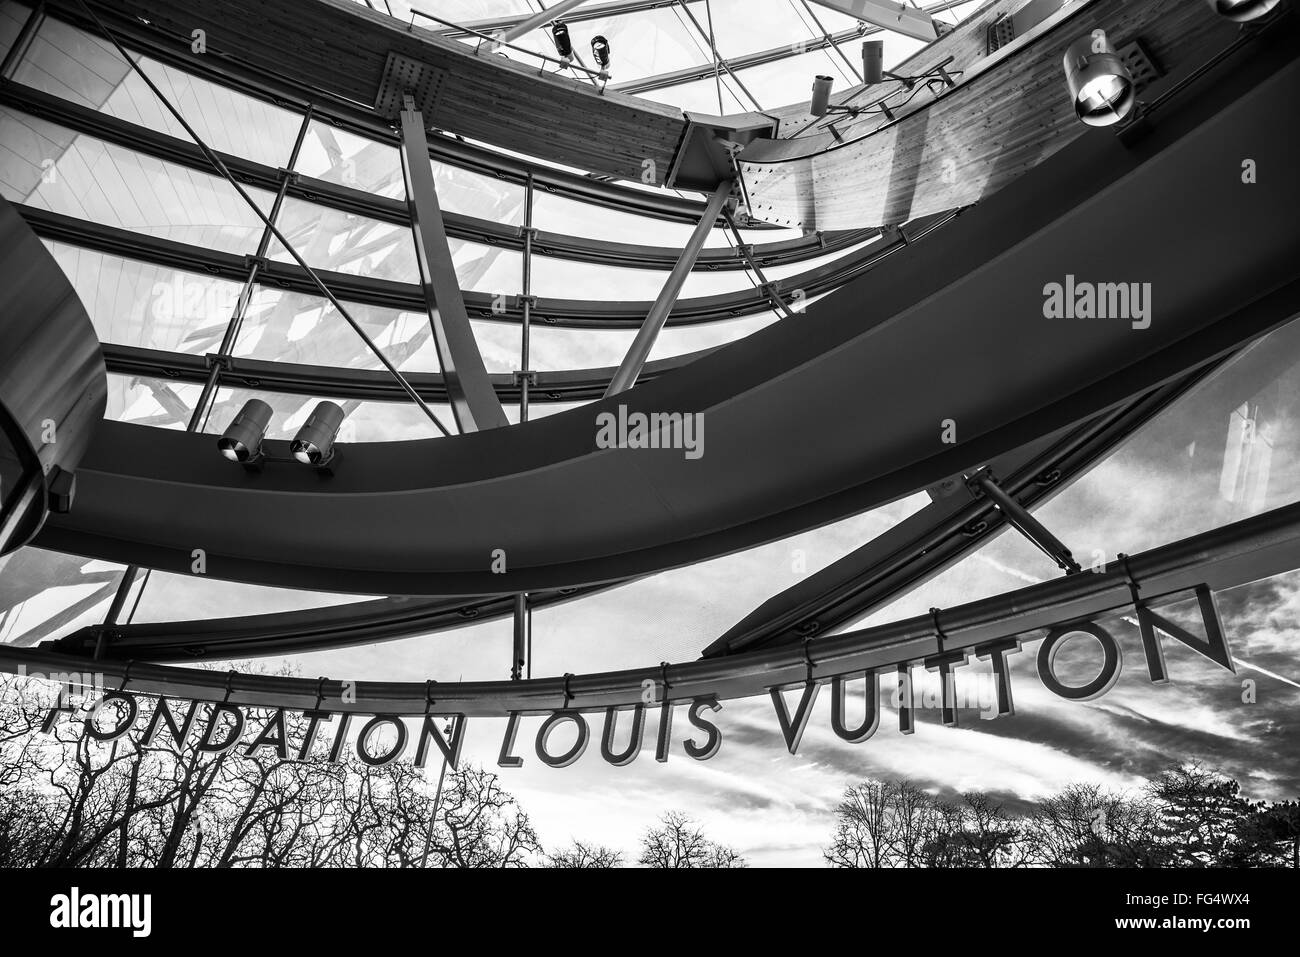 Fondation Louis vuitton - Louis Vuitton foundation, Paris, France Stock  Photo - Alamy